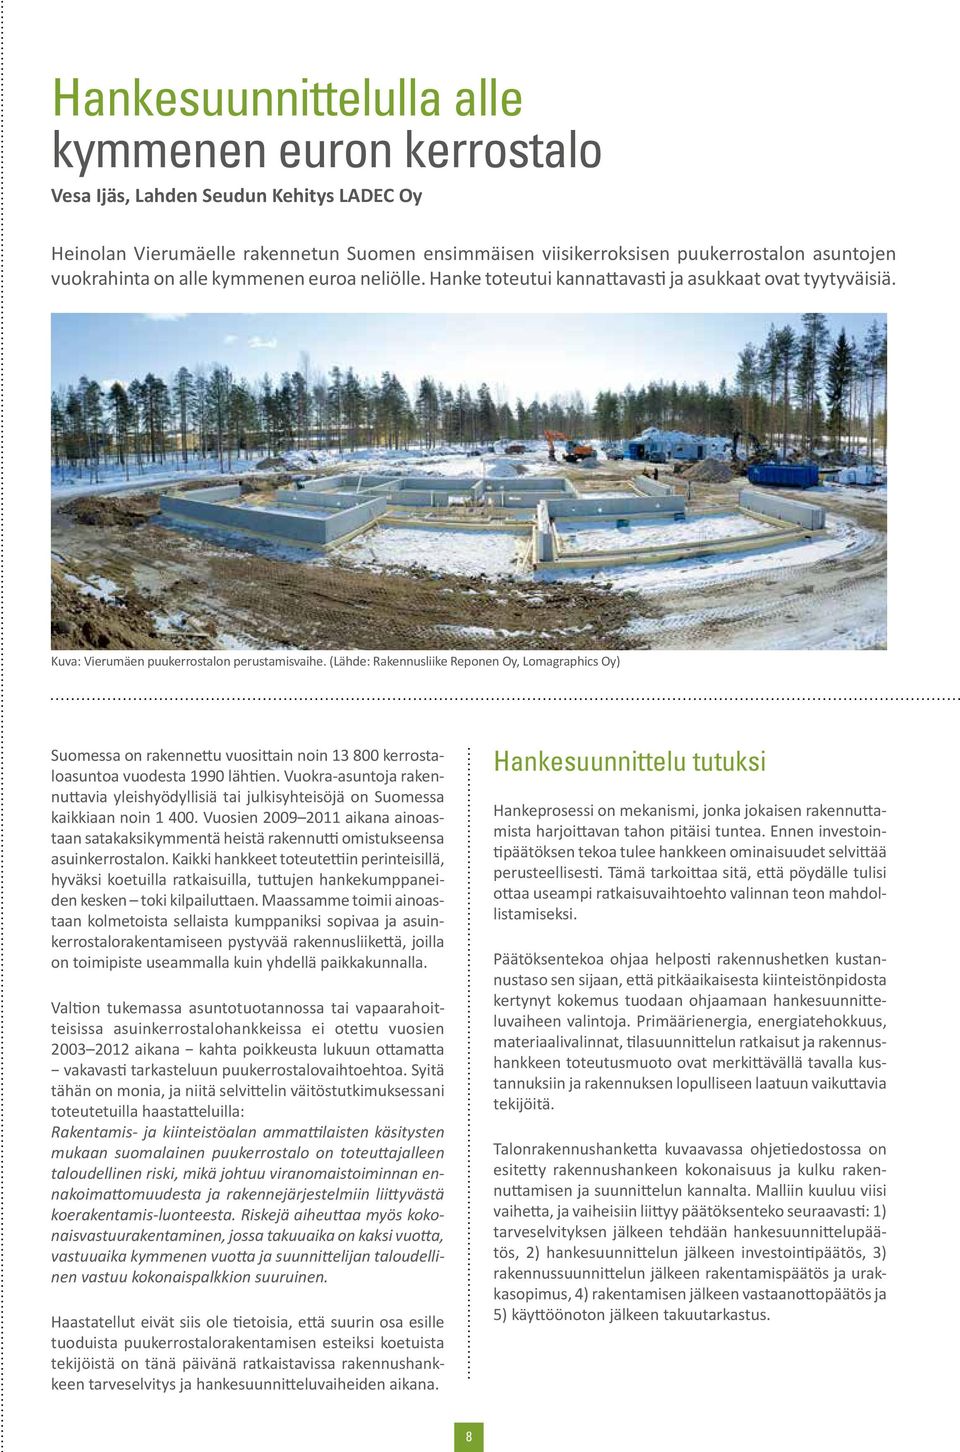 (Lähde: Rakennusliike Reponen Oy, Lomagraphics Oy) Suomessa on rakennettu vuosittain noin 13 800 kerrostaloasuntoa vuodesta 1990 lähtien.